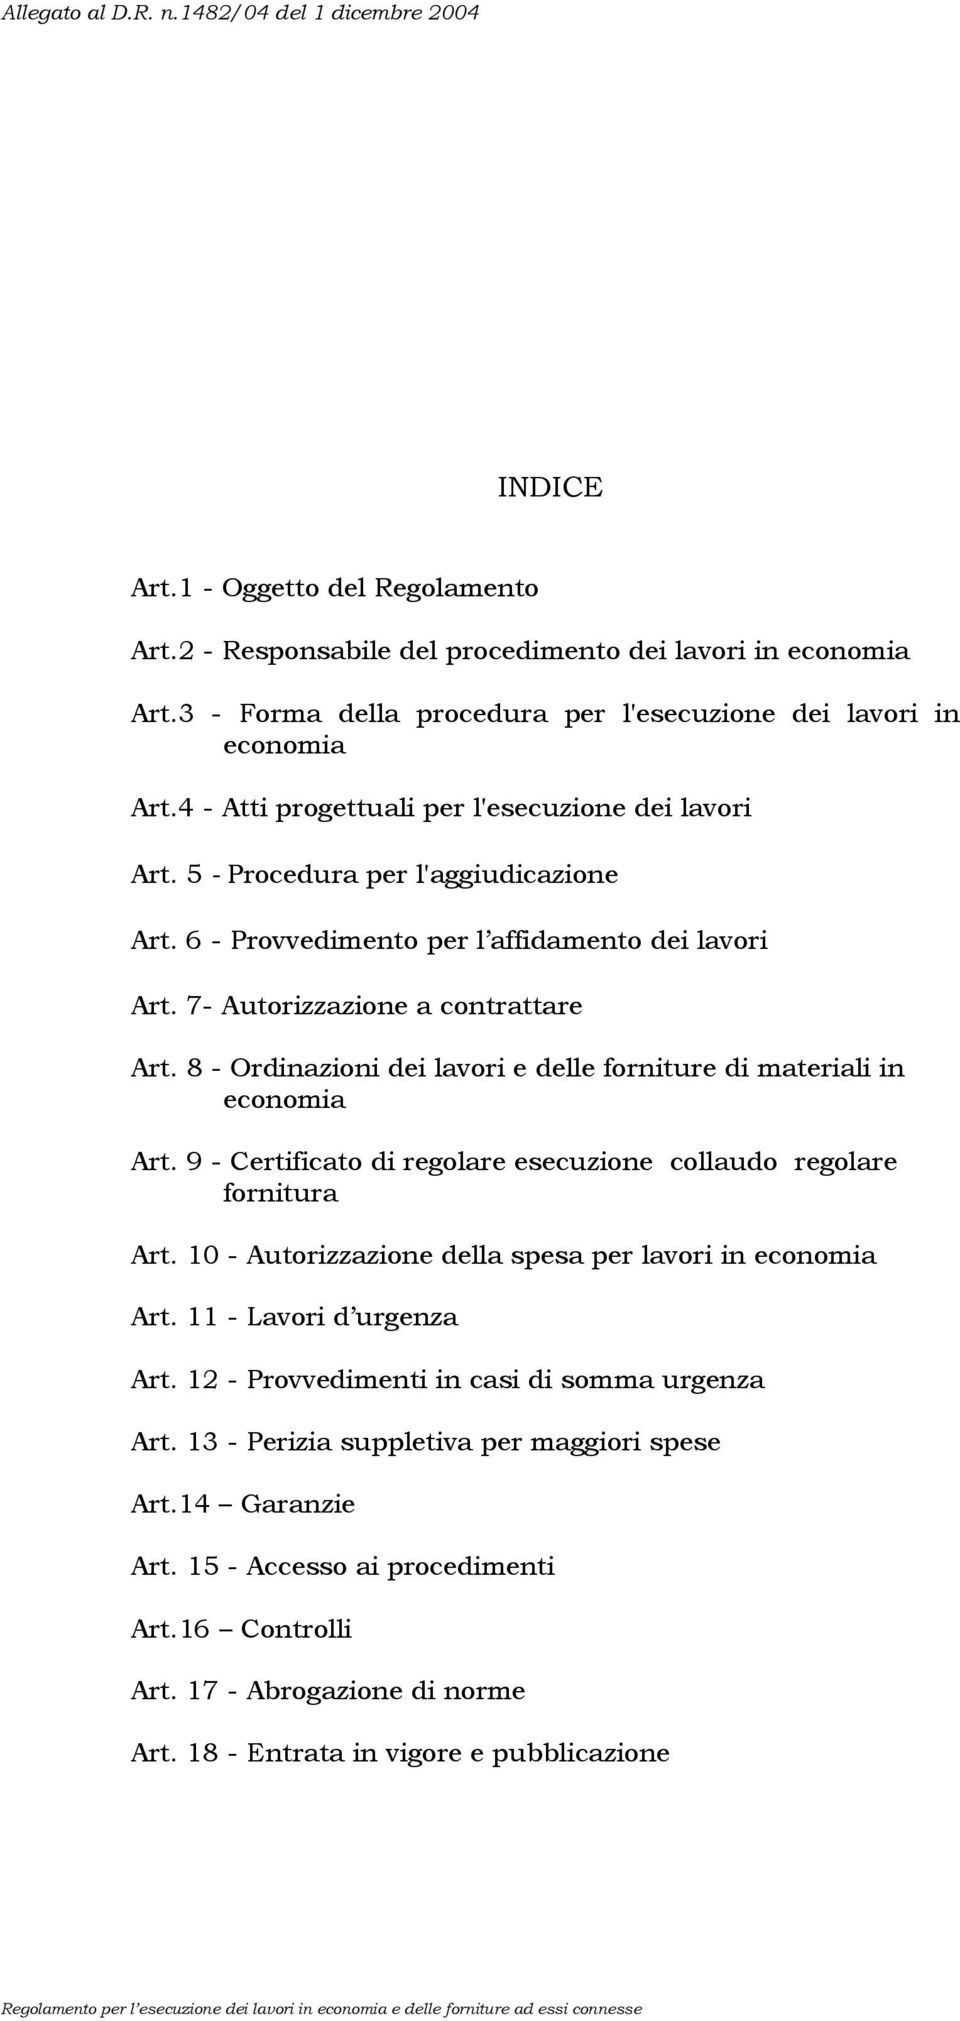 8 - Ordinazioni dei lavori e delle forniture di materiali in economia Art. 9 - Certificato di regolare esecuzione collaudo regolare fornitura Art.